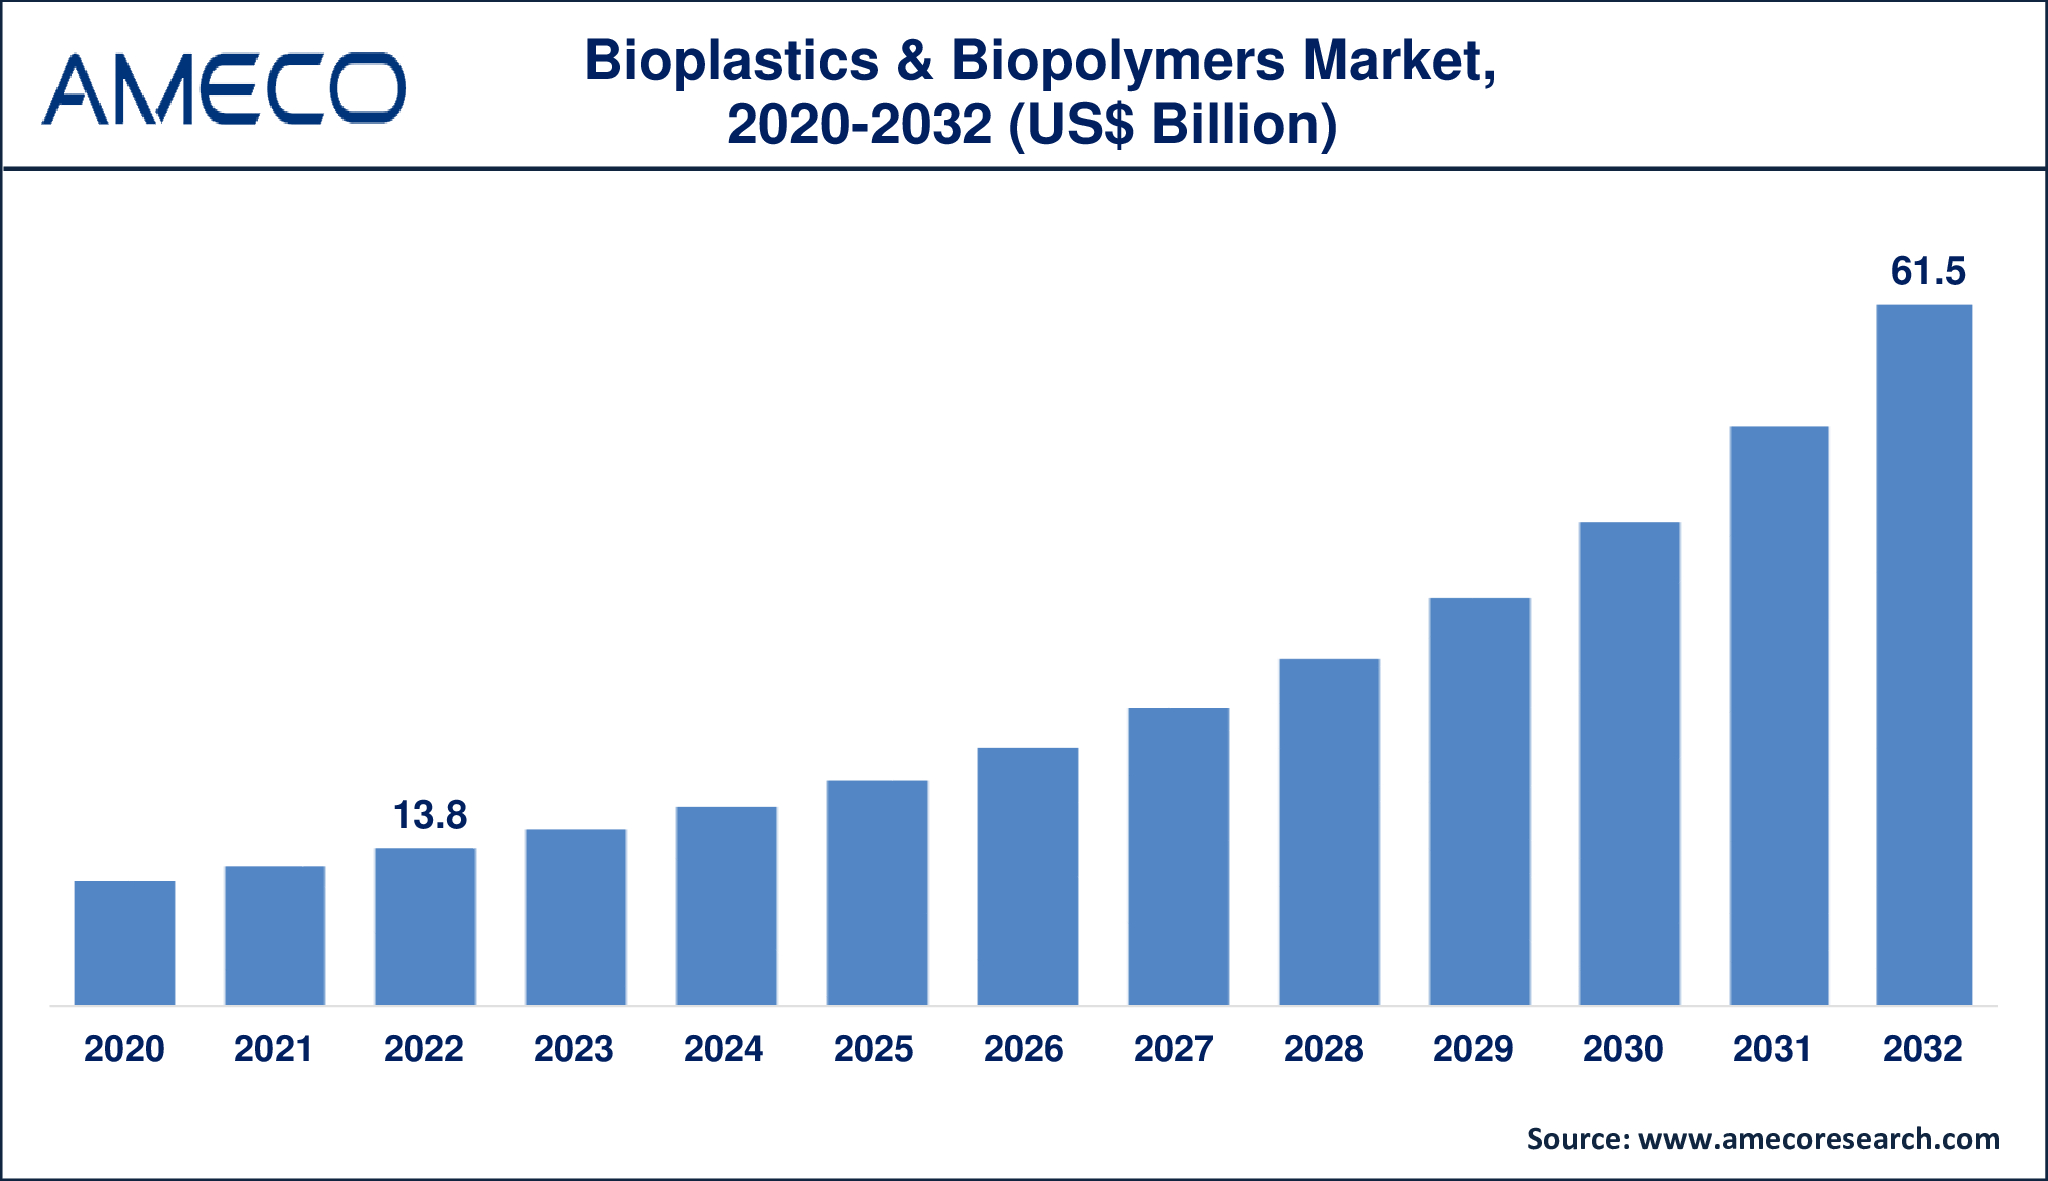 Bioplastics & Biopolymers Market Dynamics